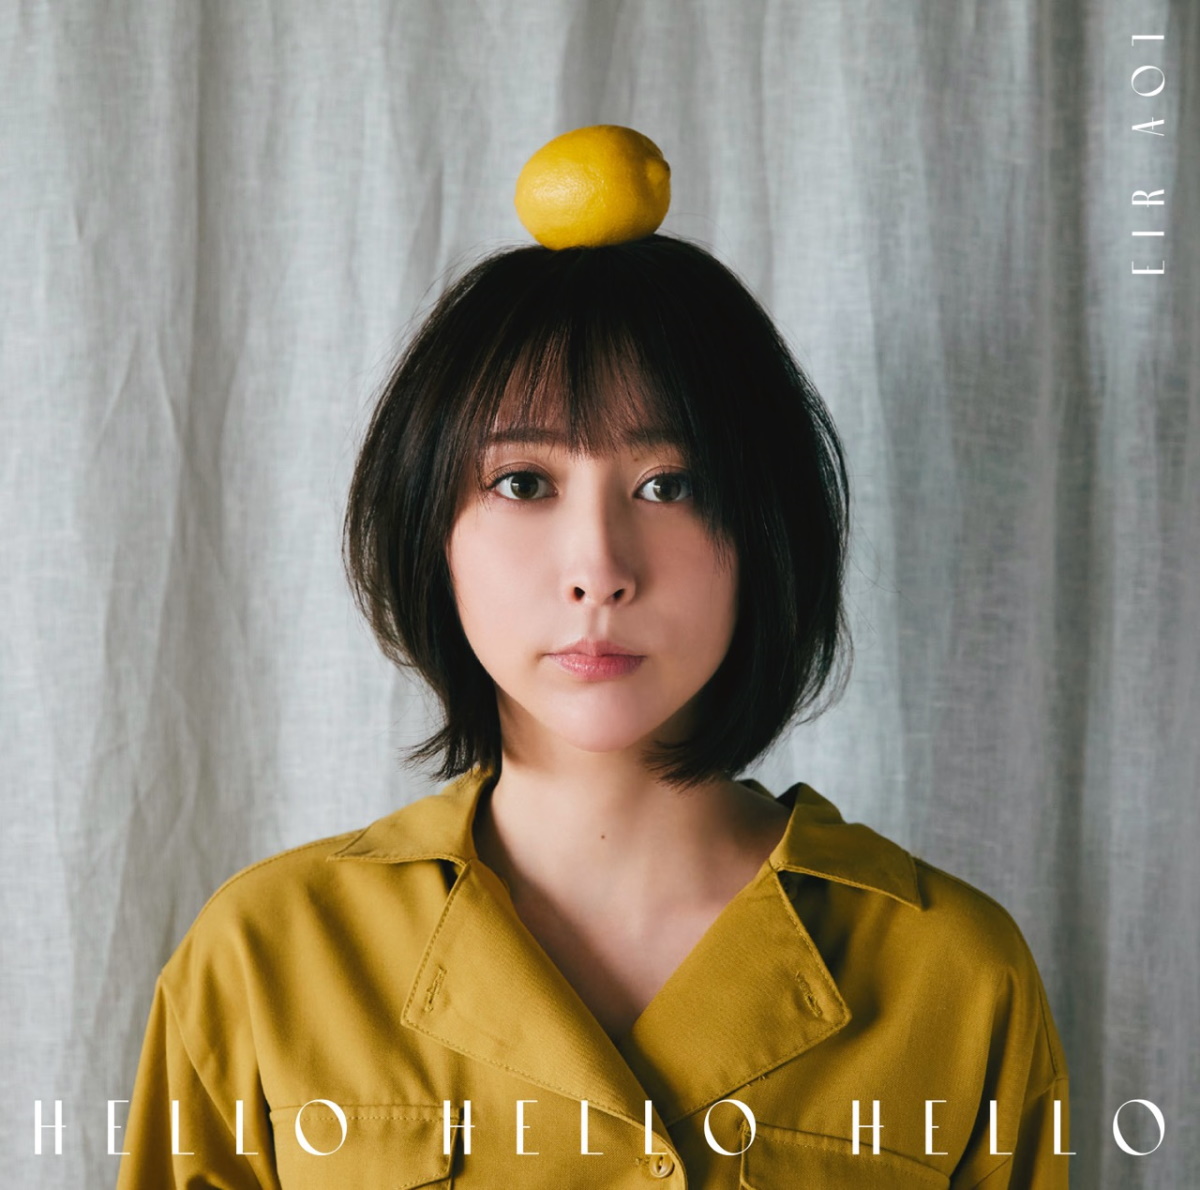 Cover for『Eir Aoi - HELLO HELLO HELLO』from the release『HELLO HELLO HELLO』